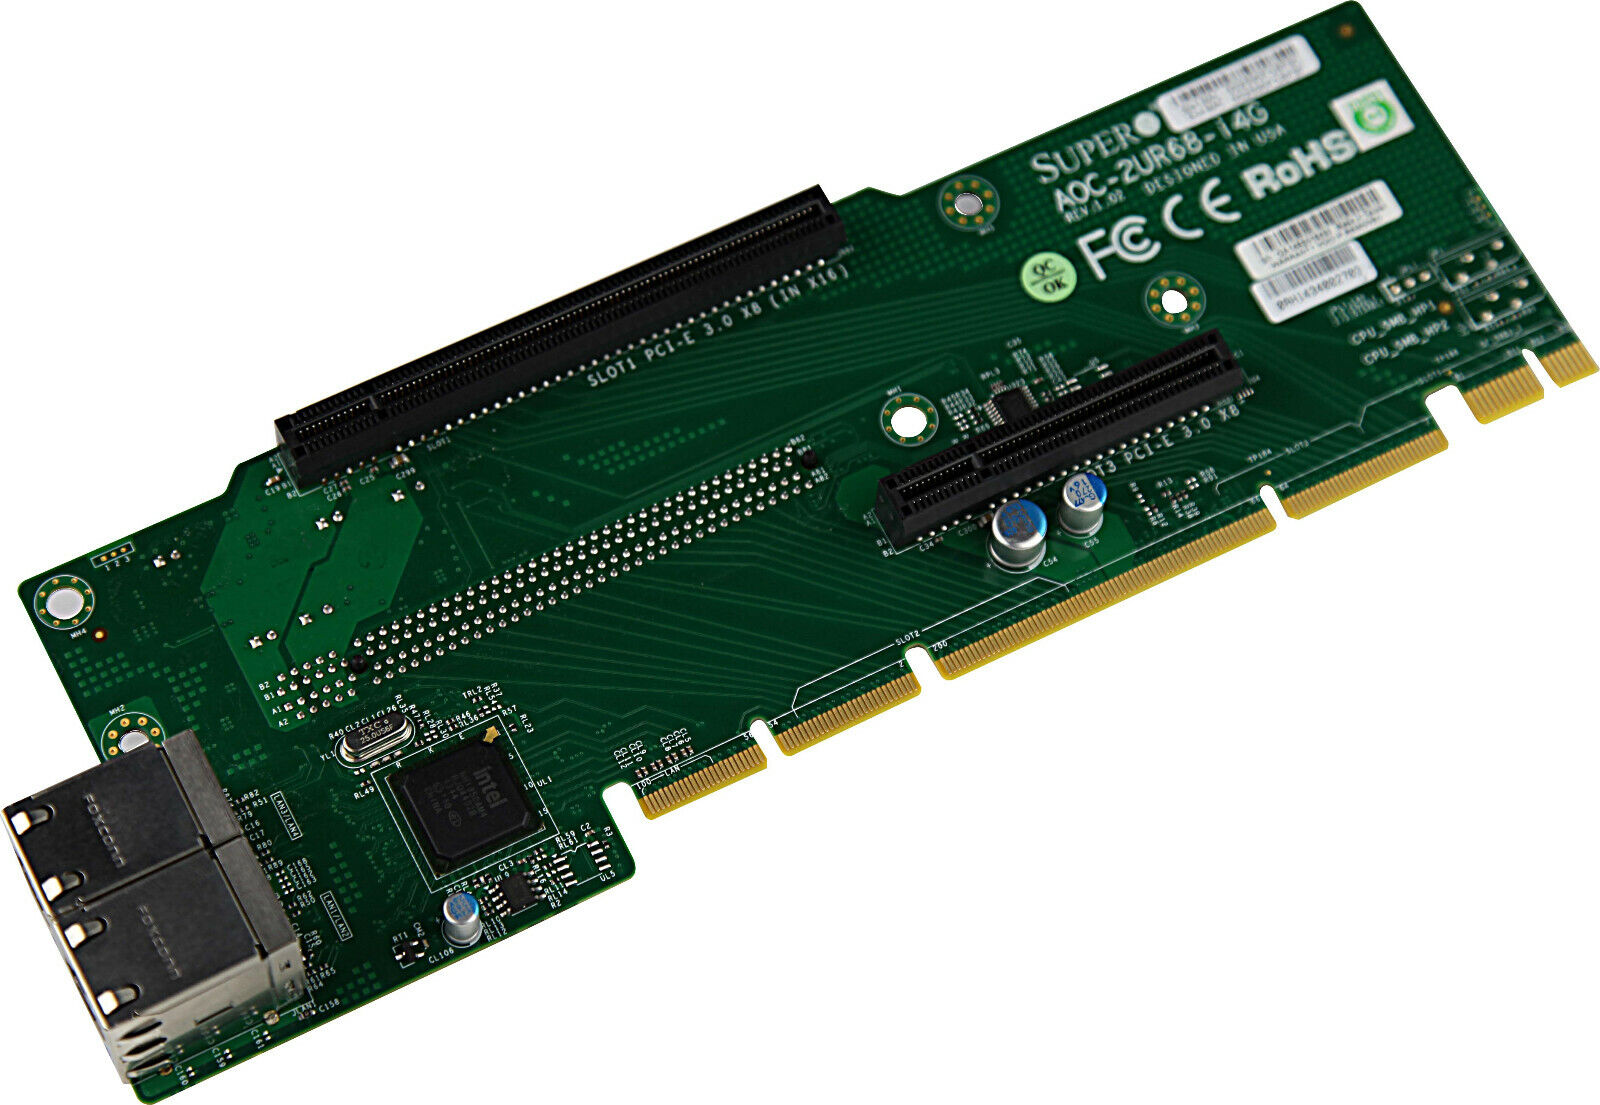 Supermicro AOC-2UR68-I4G 2U Ultra 4-port GbE RJ45, 1x PCI-E 3.0 x8 